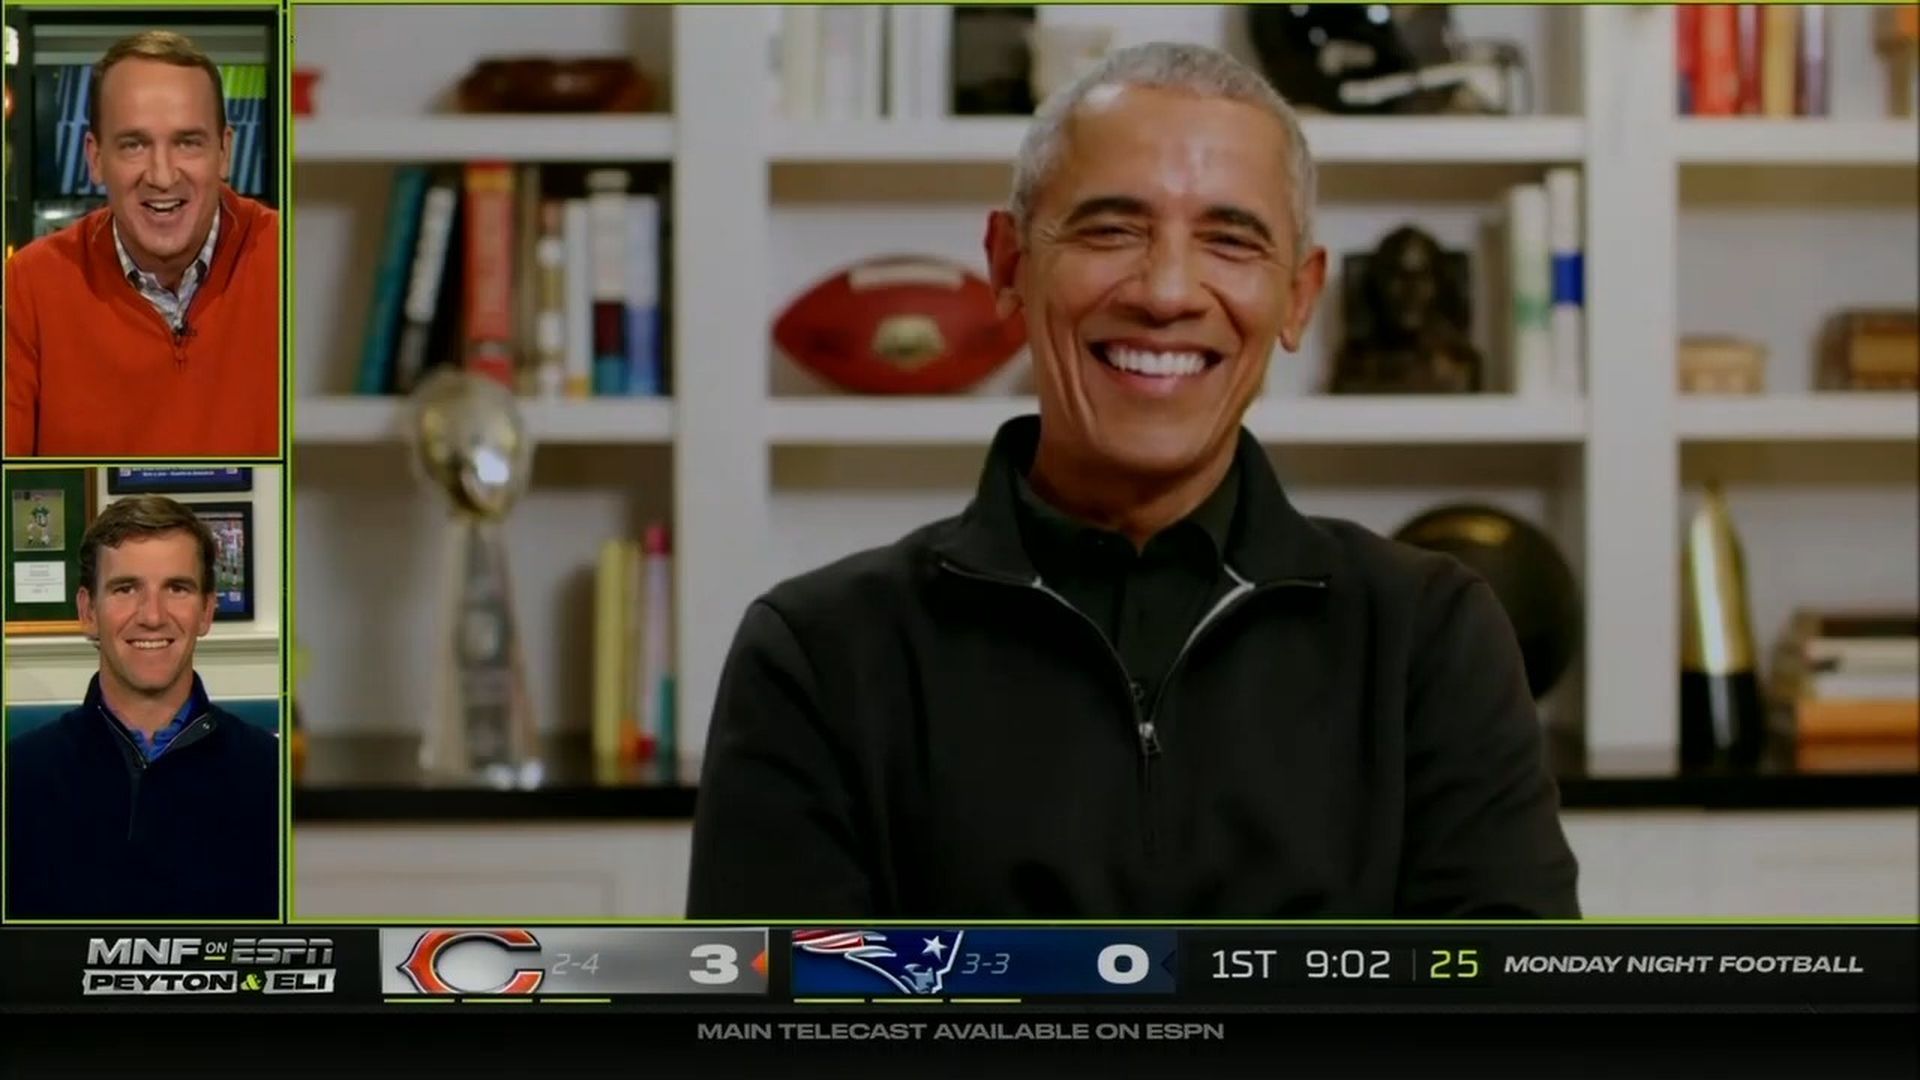 Obama on Manningcast